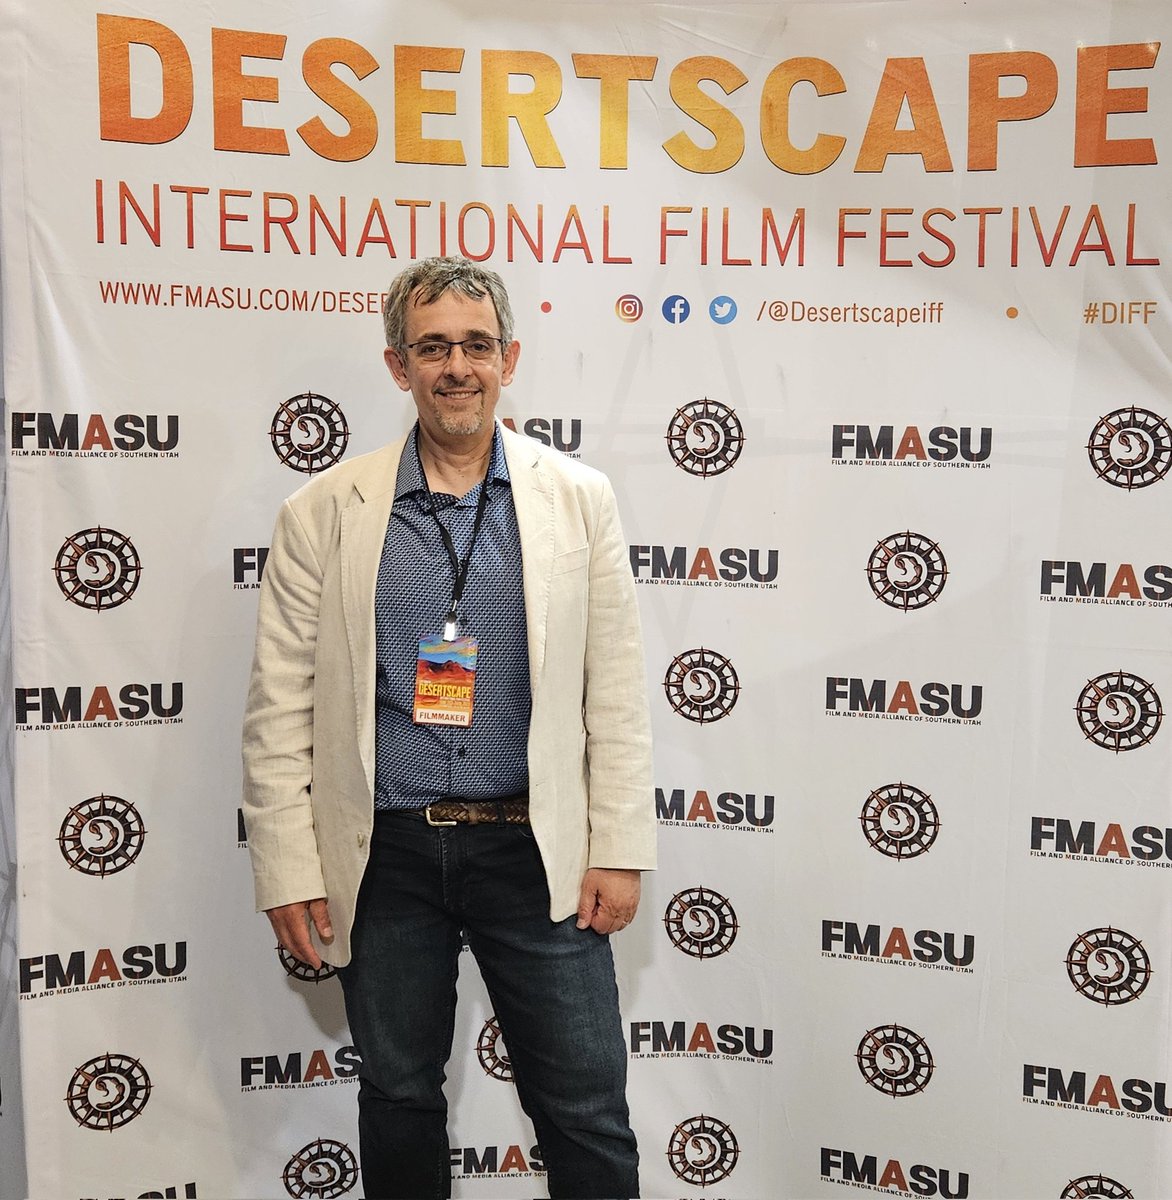 Great response to Publish or Perish at the Desertscape international Film Festival.

#publishorperish
#publishorperishmovie